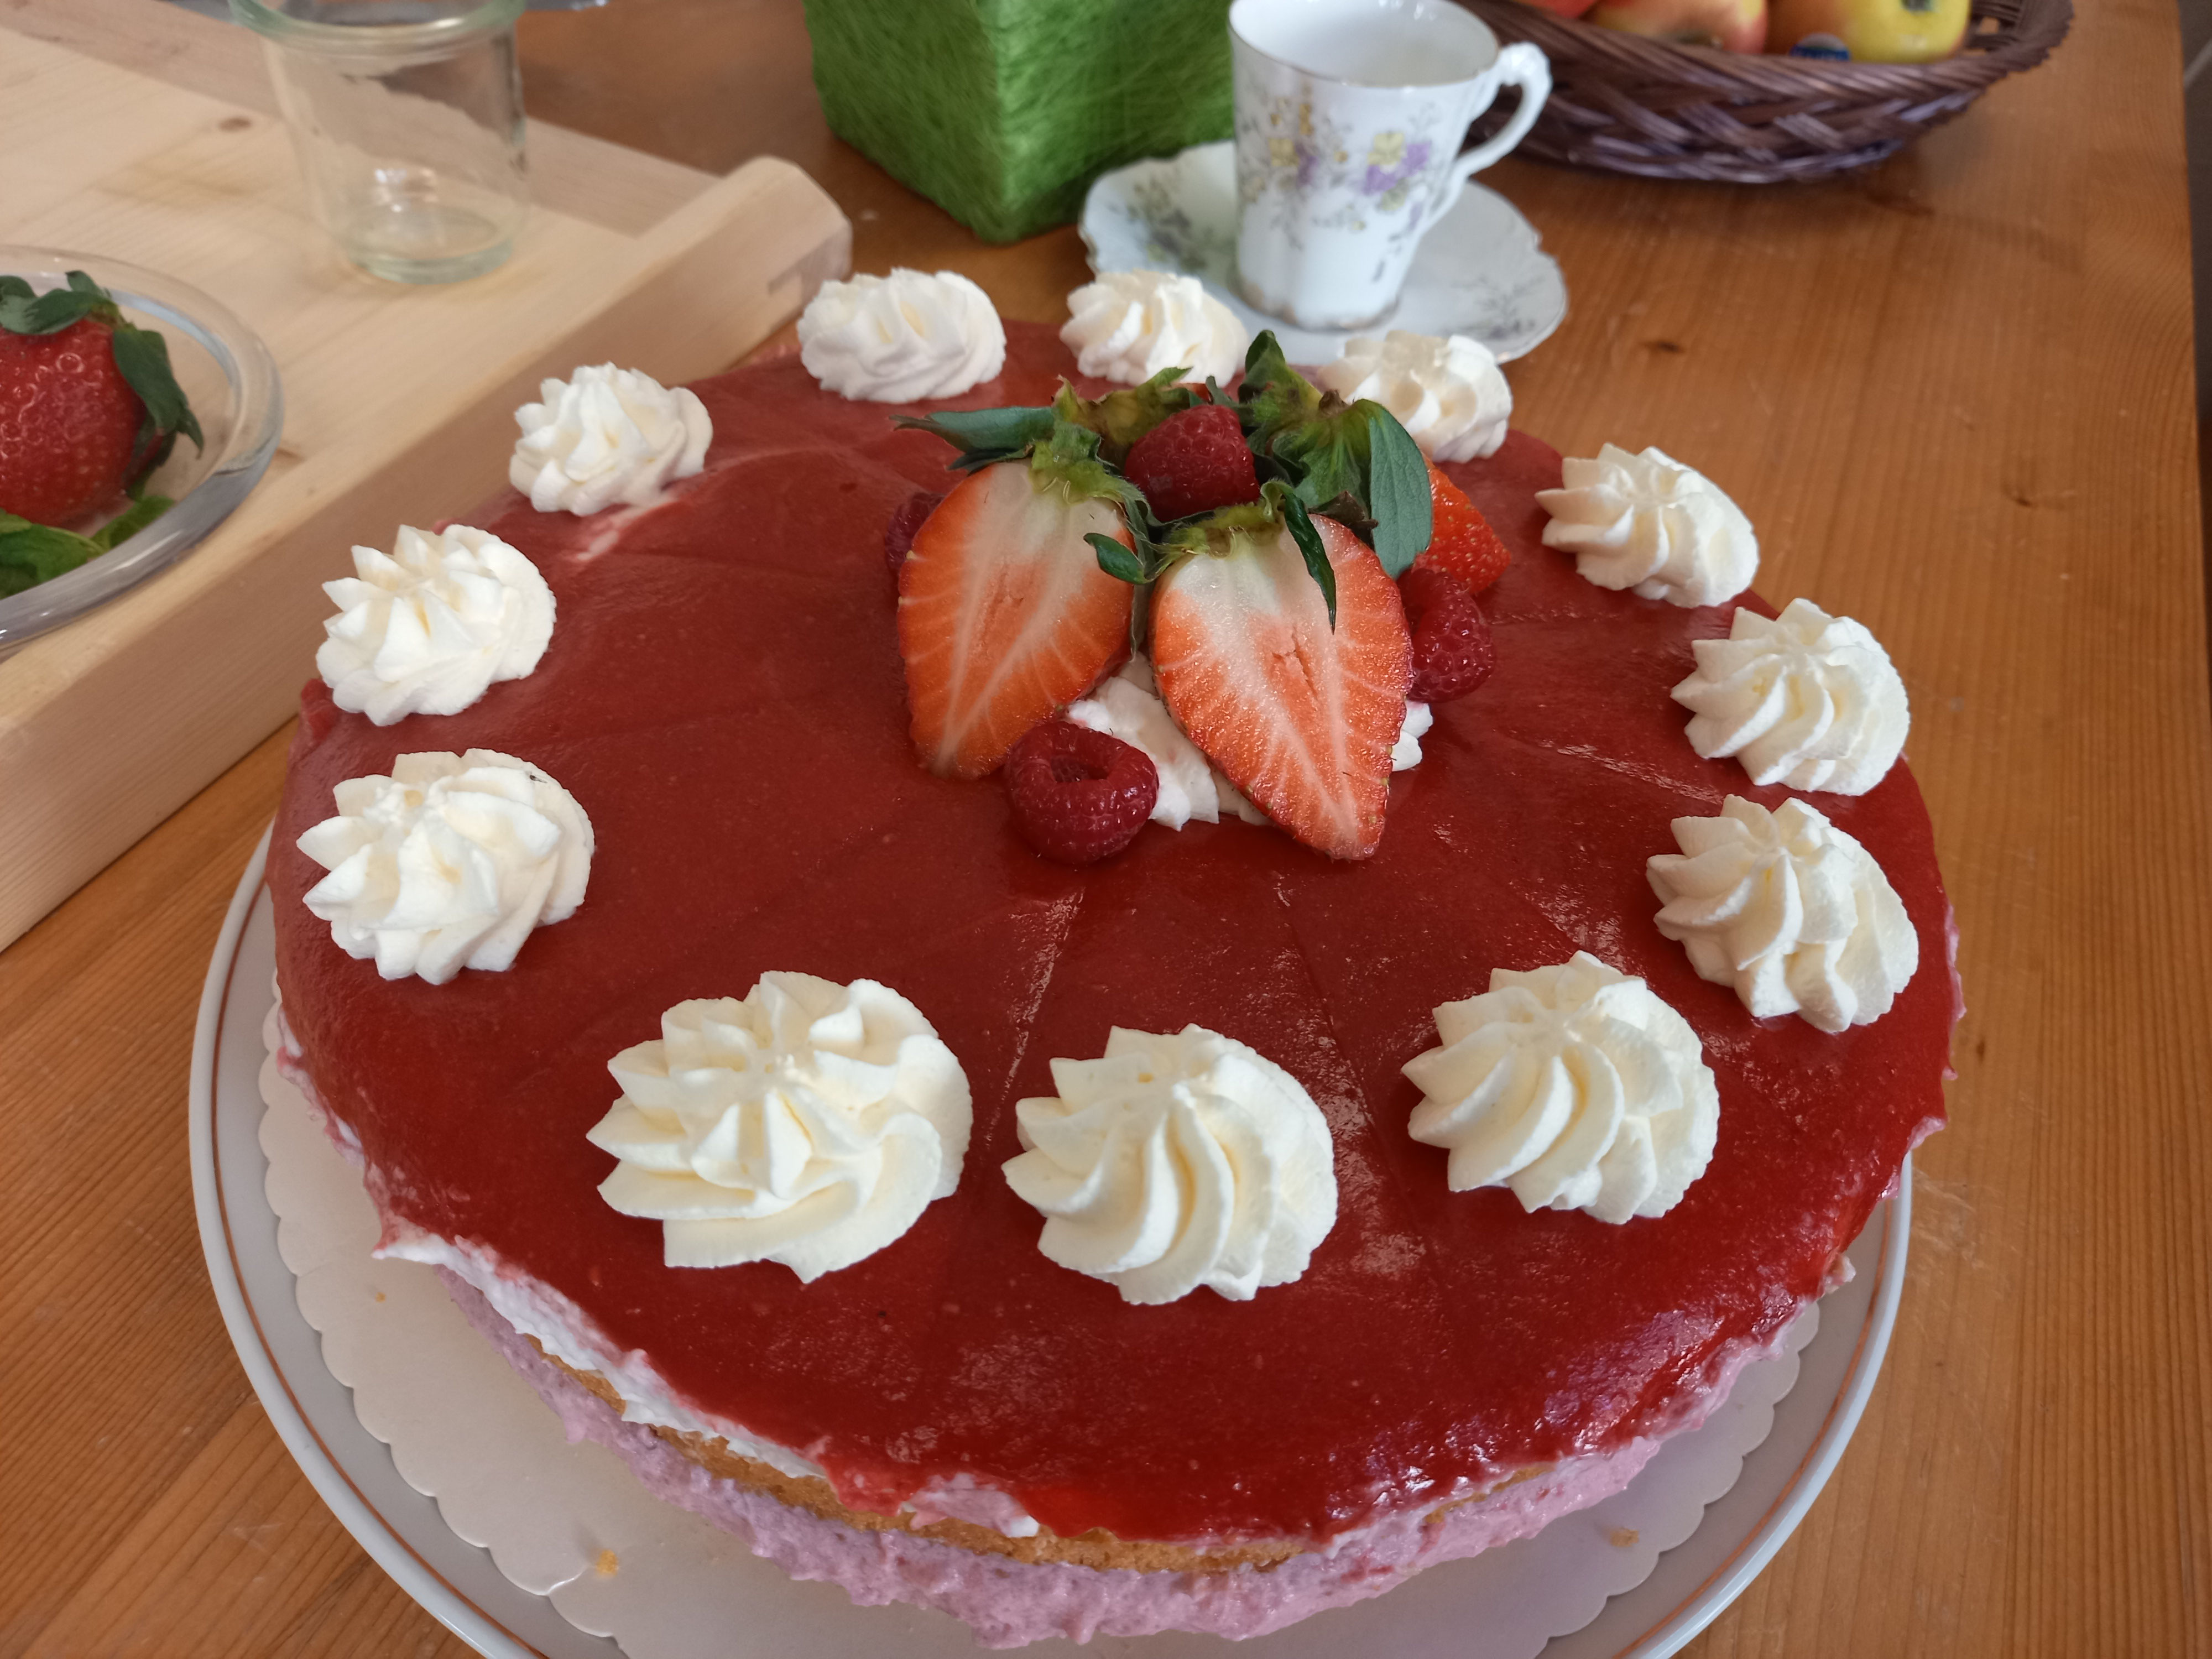 Erdbeer-Himbeer-Prosecco Torte - eins-zwei-drei-leckers Webseite!